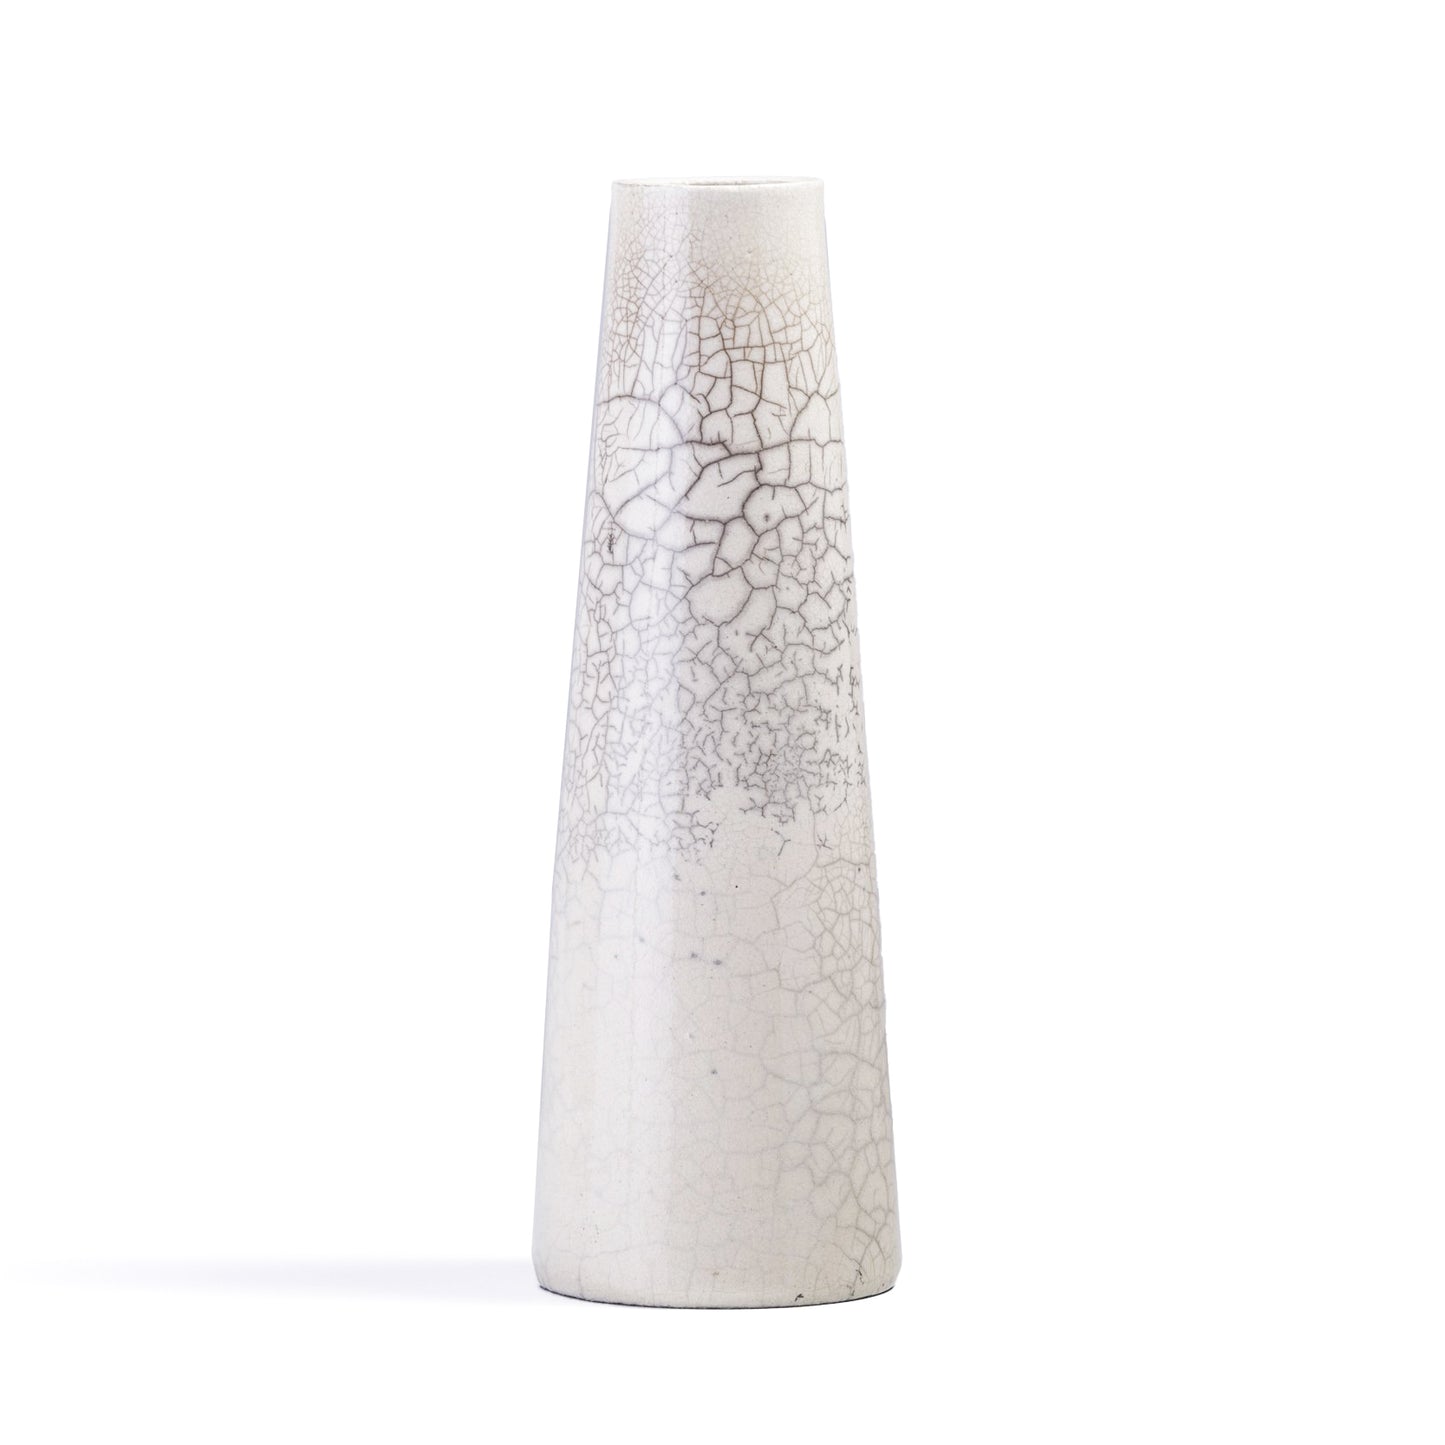 Japanese Modern Minimalist Hana Vertical L Vase Raku Ceramic White Crakle